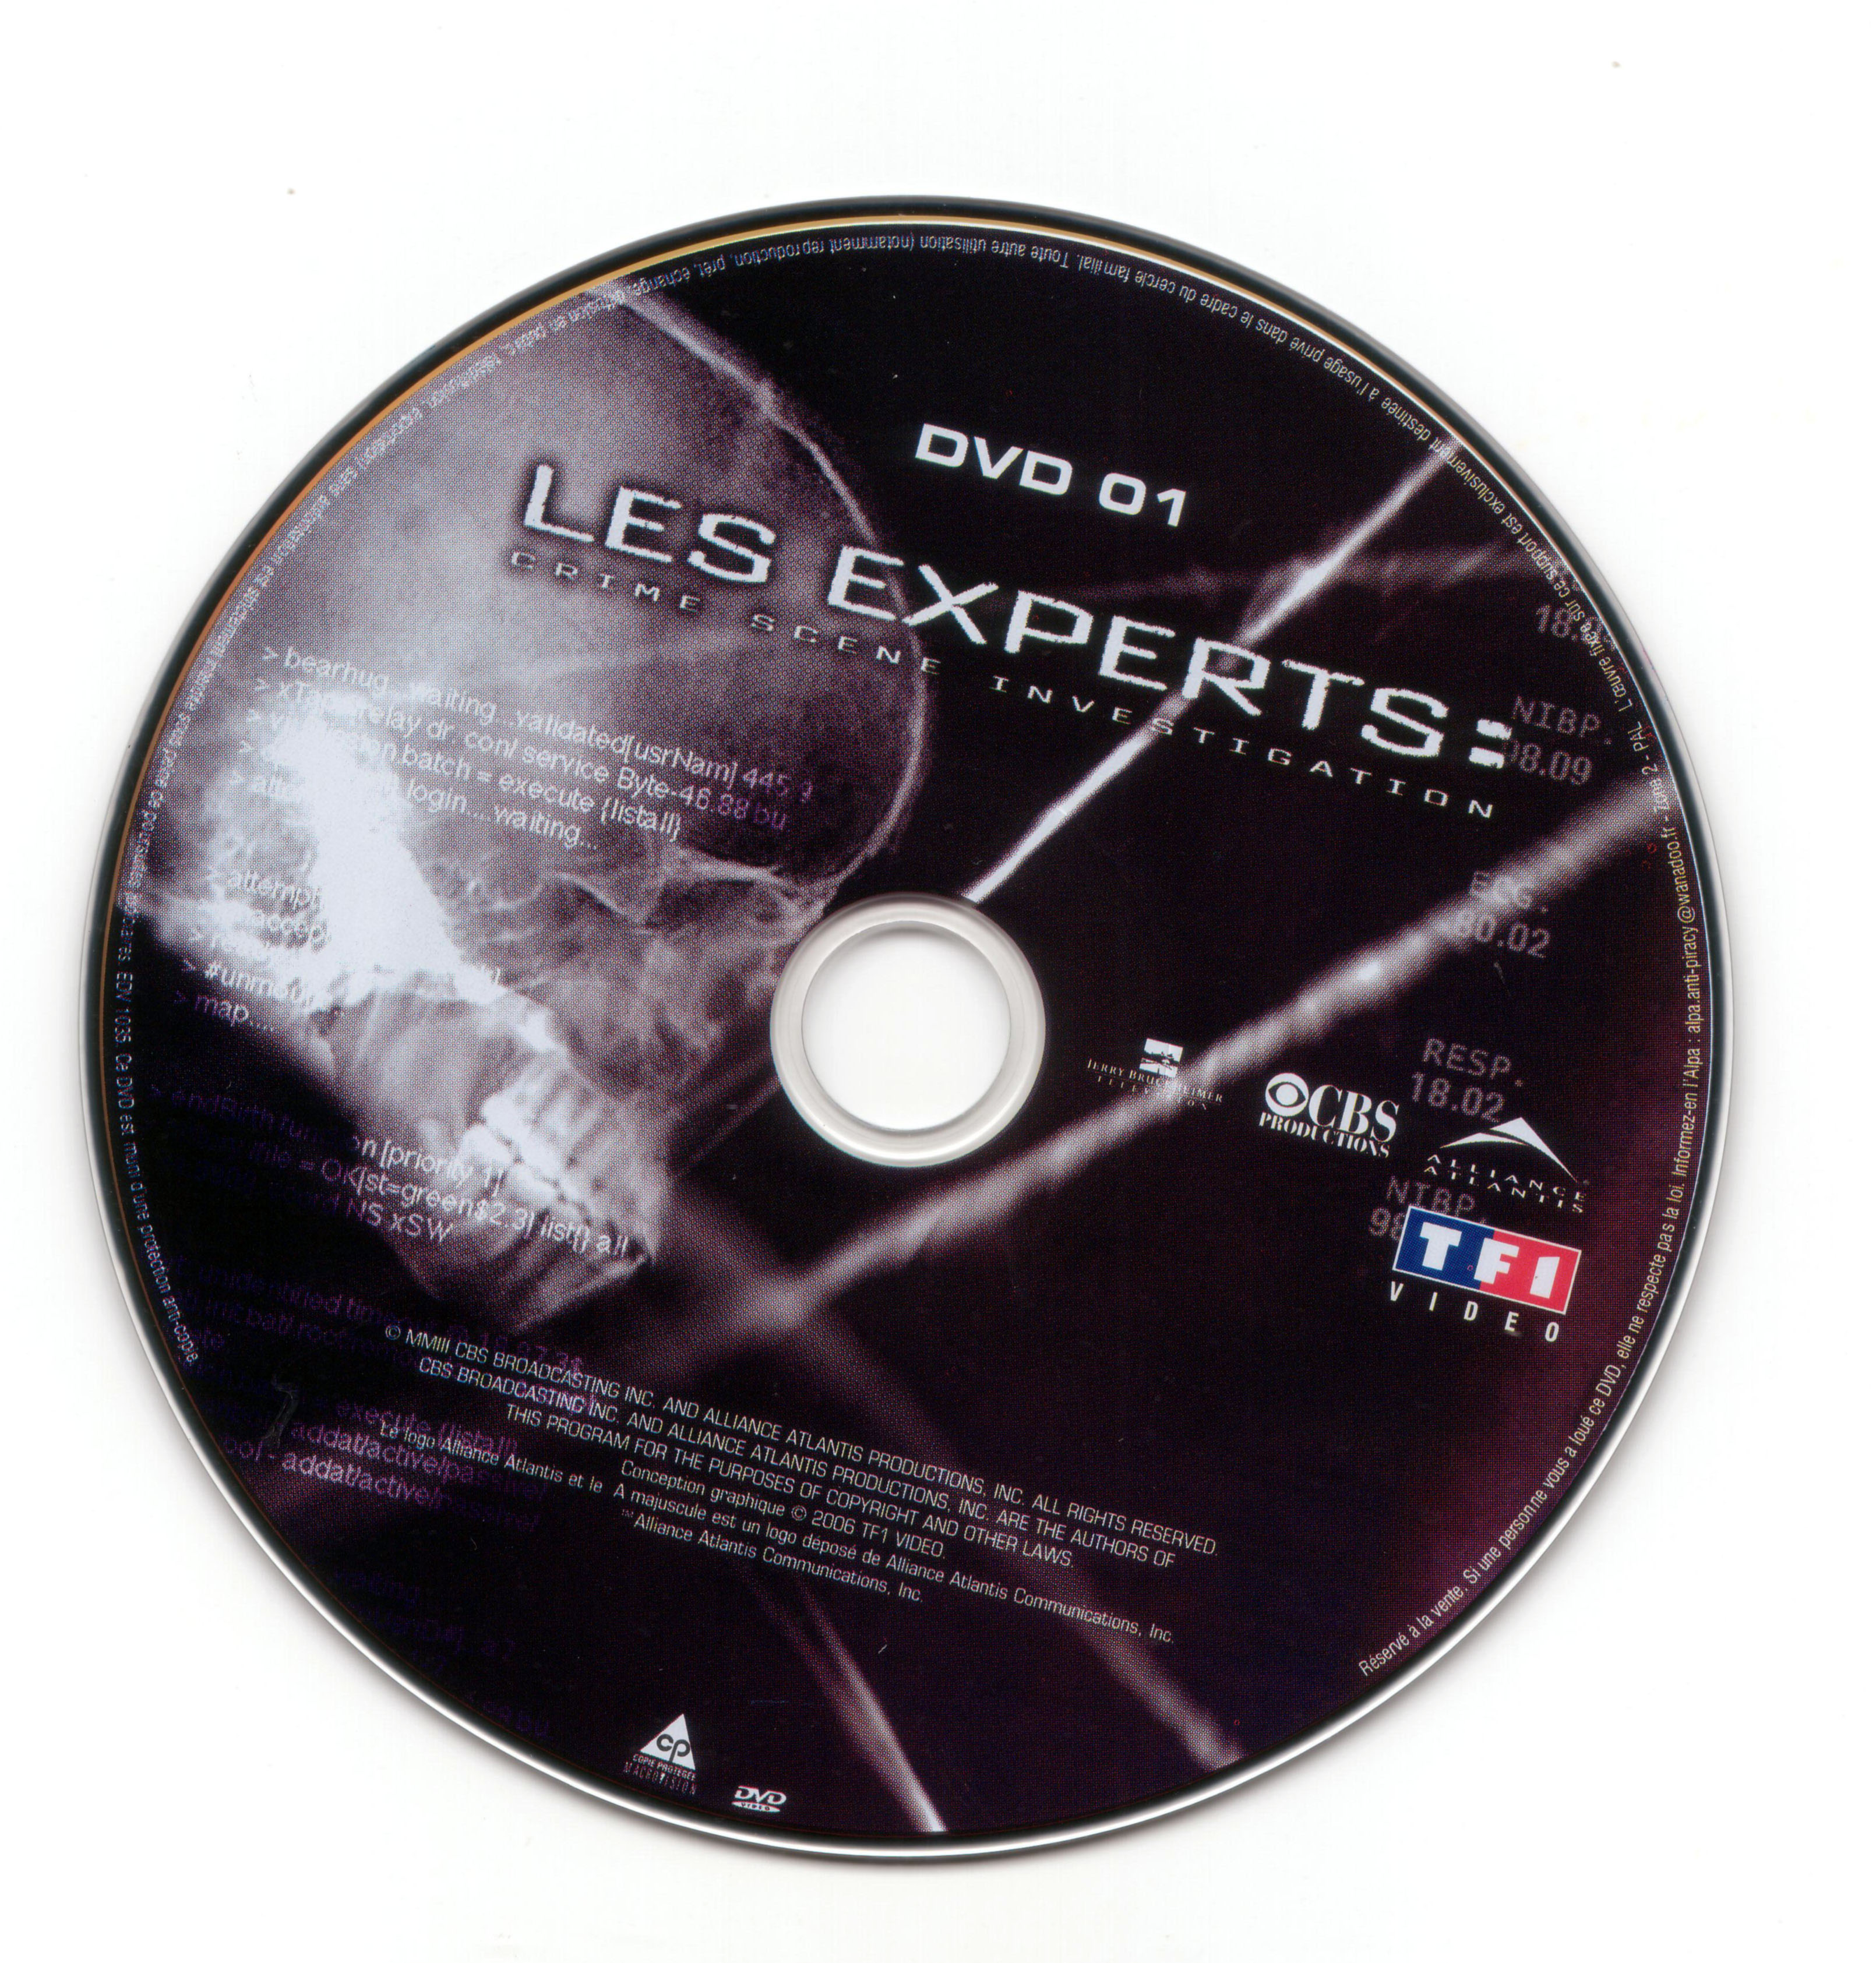 Les experts Saison 4 vol 1 DISC 1